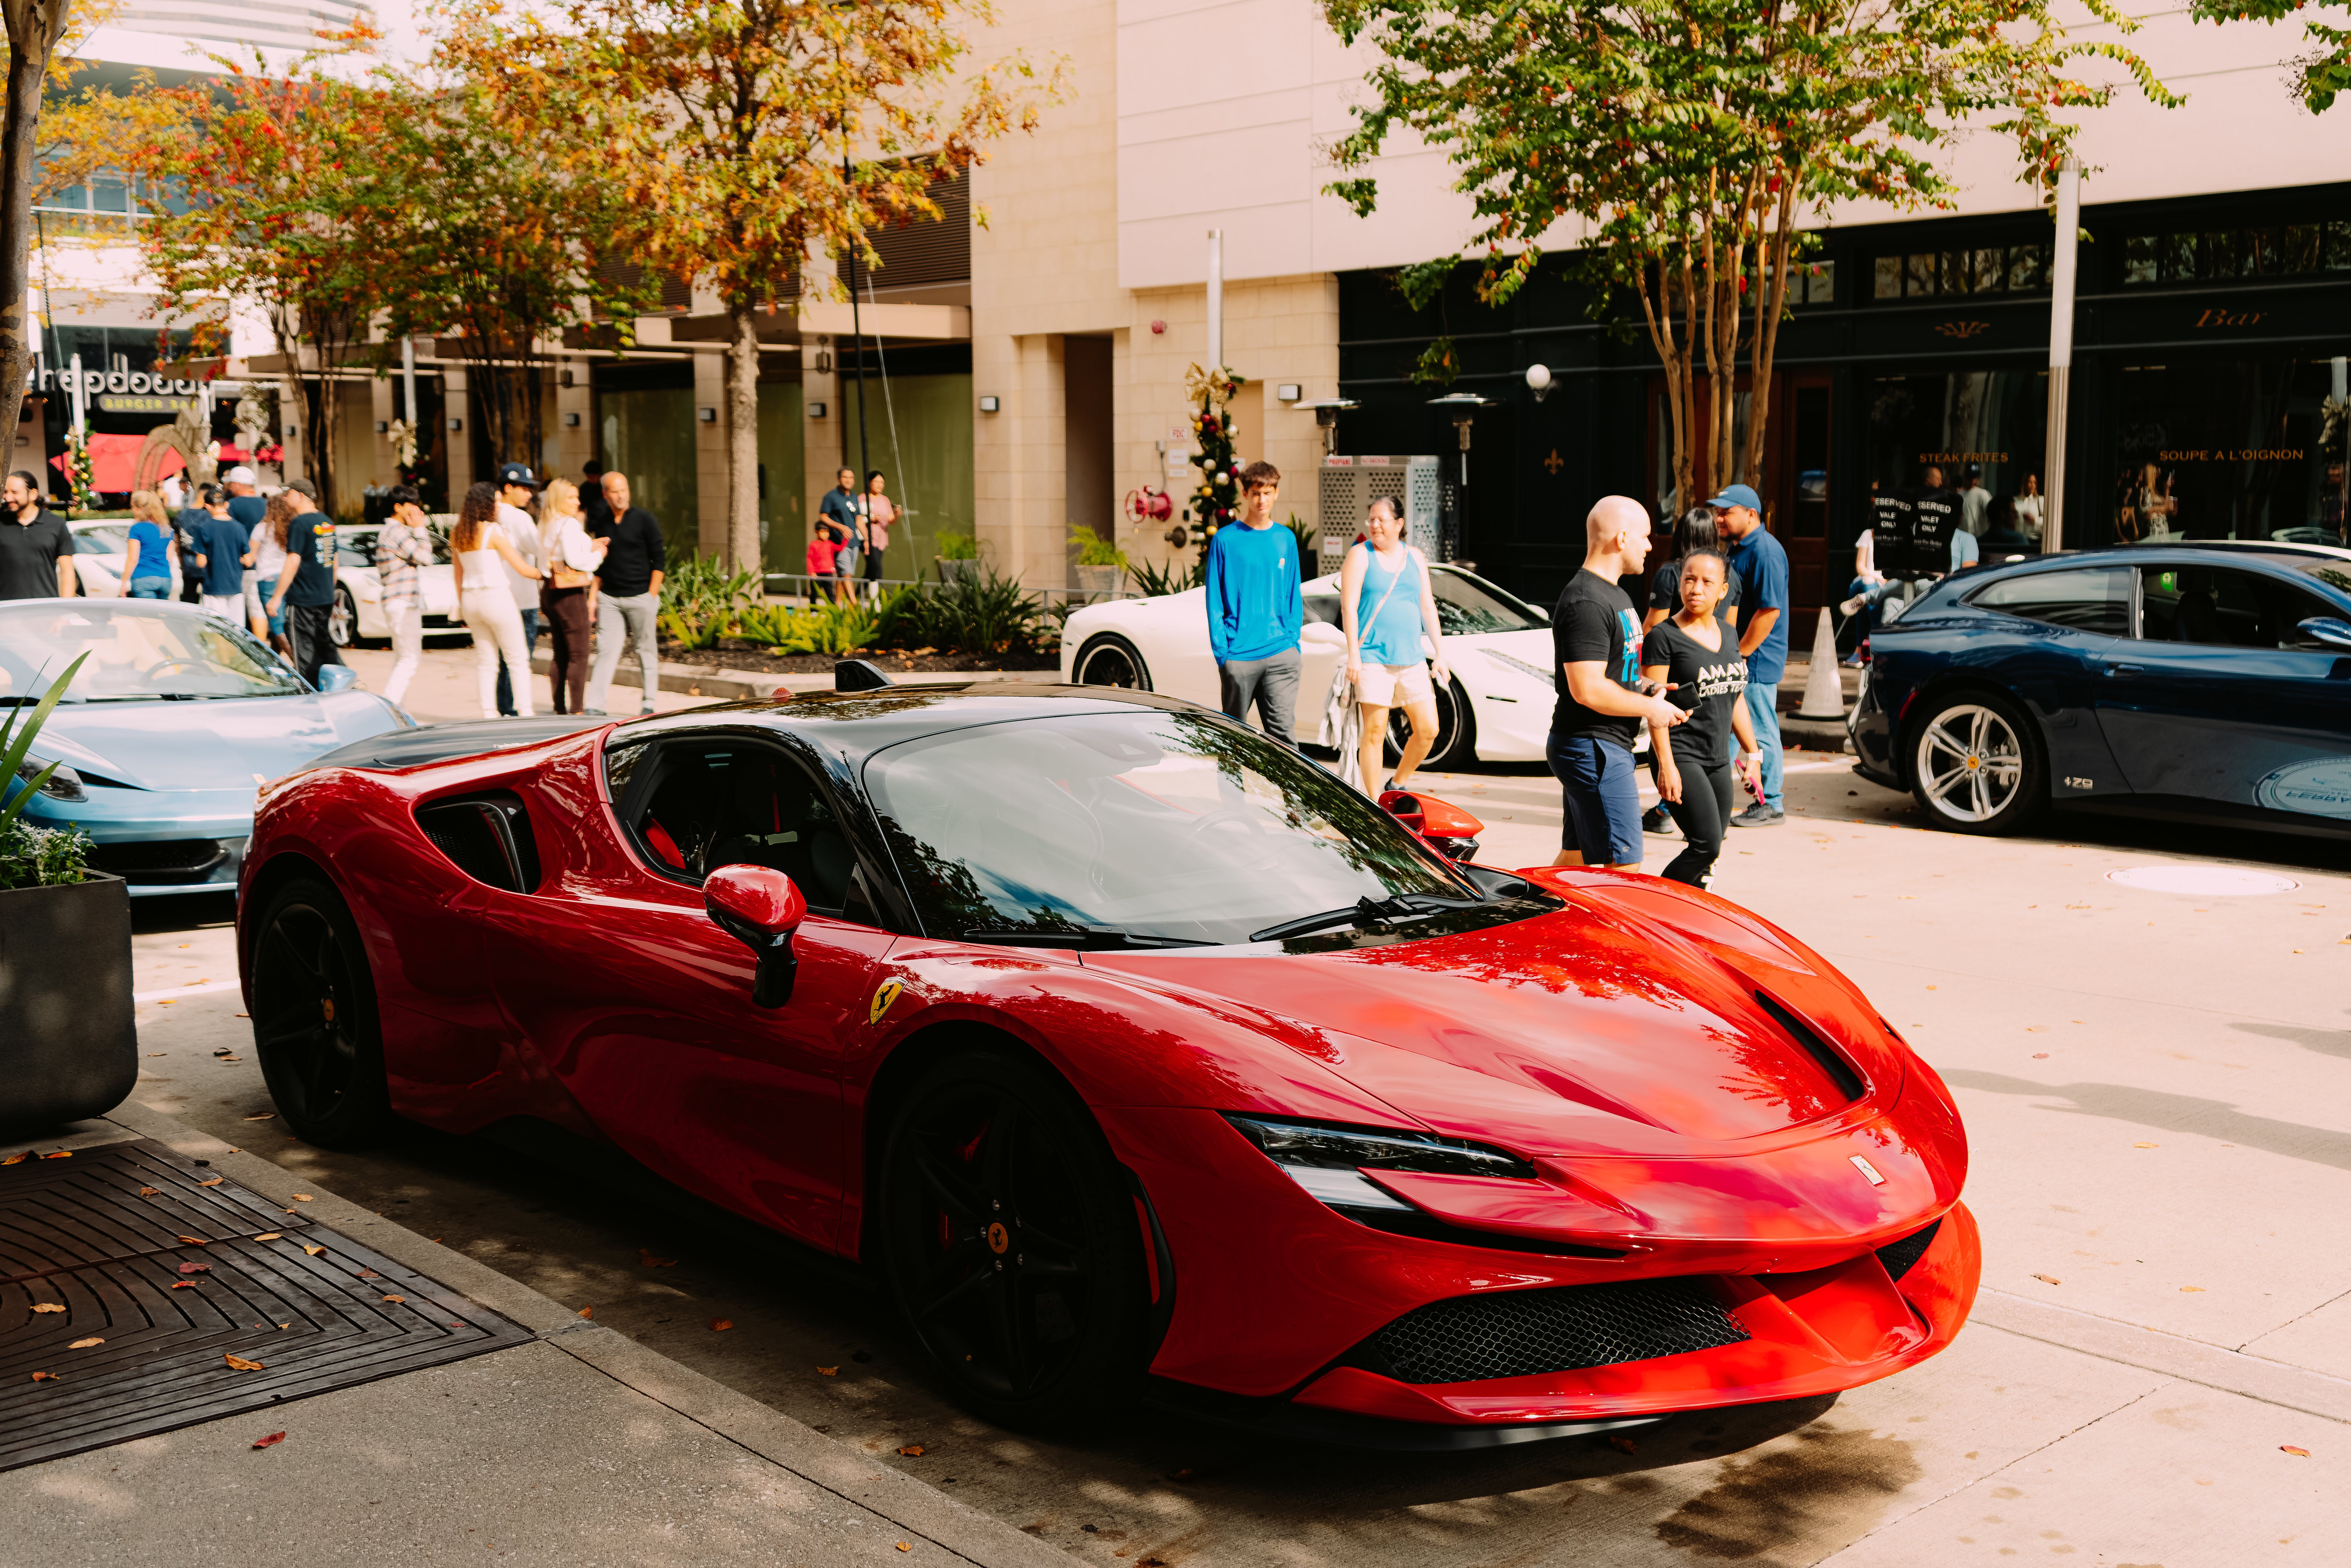 Foto de um exemplar da Ferrari nas ruas